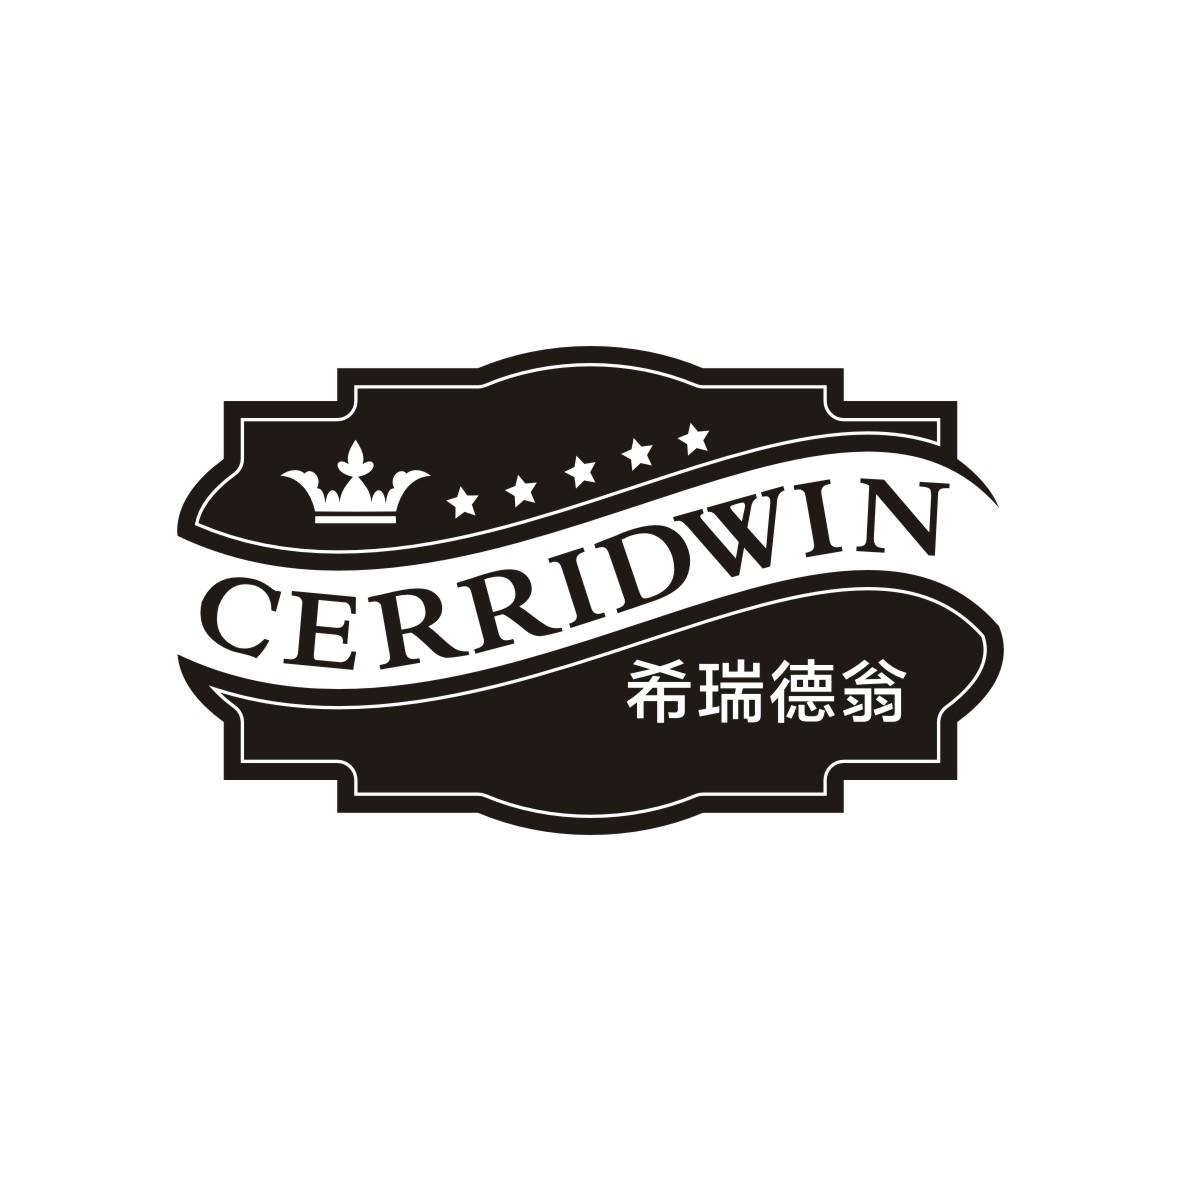 32类-啤酒饮料希瑞德翁 CERRIDWIN商标转让